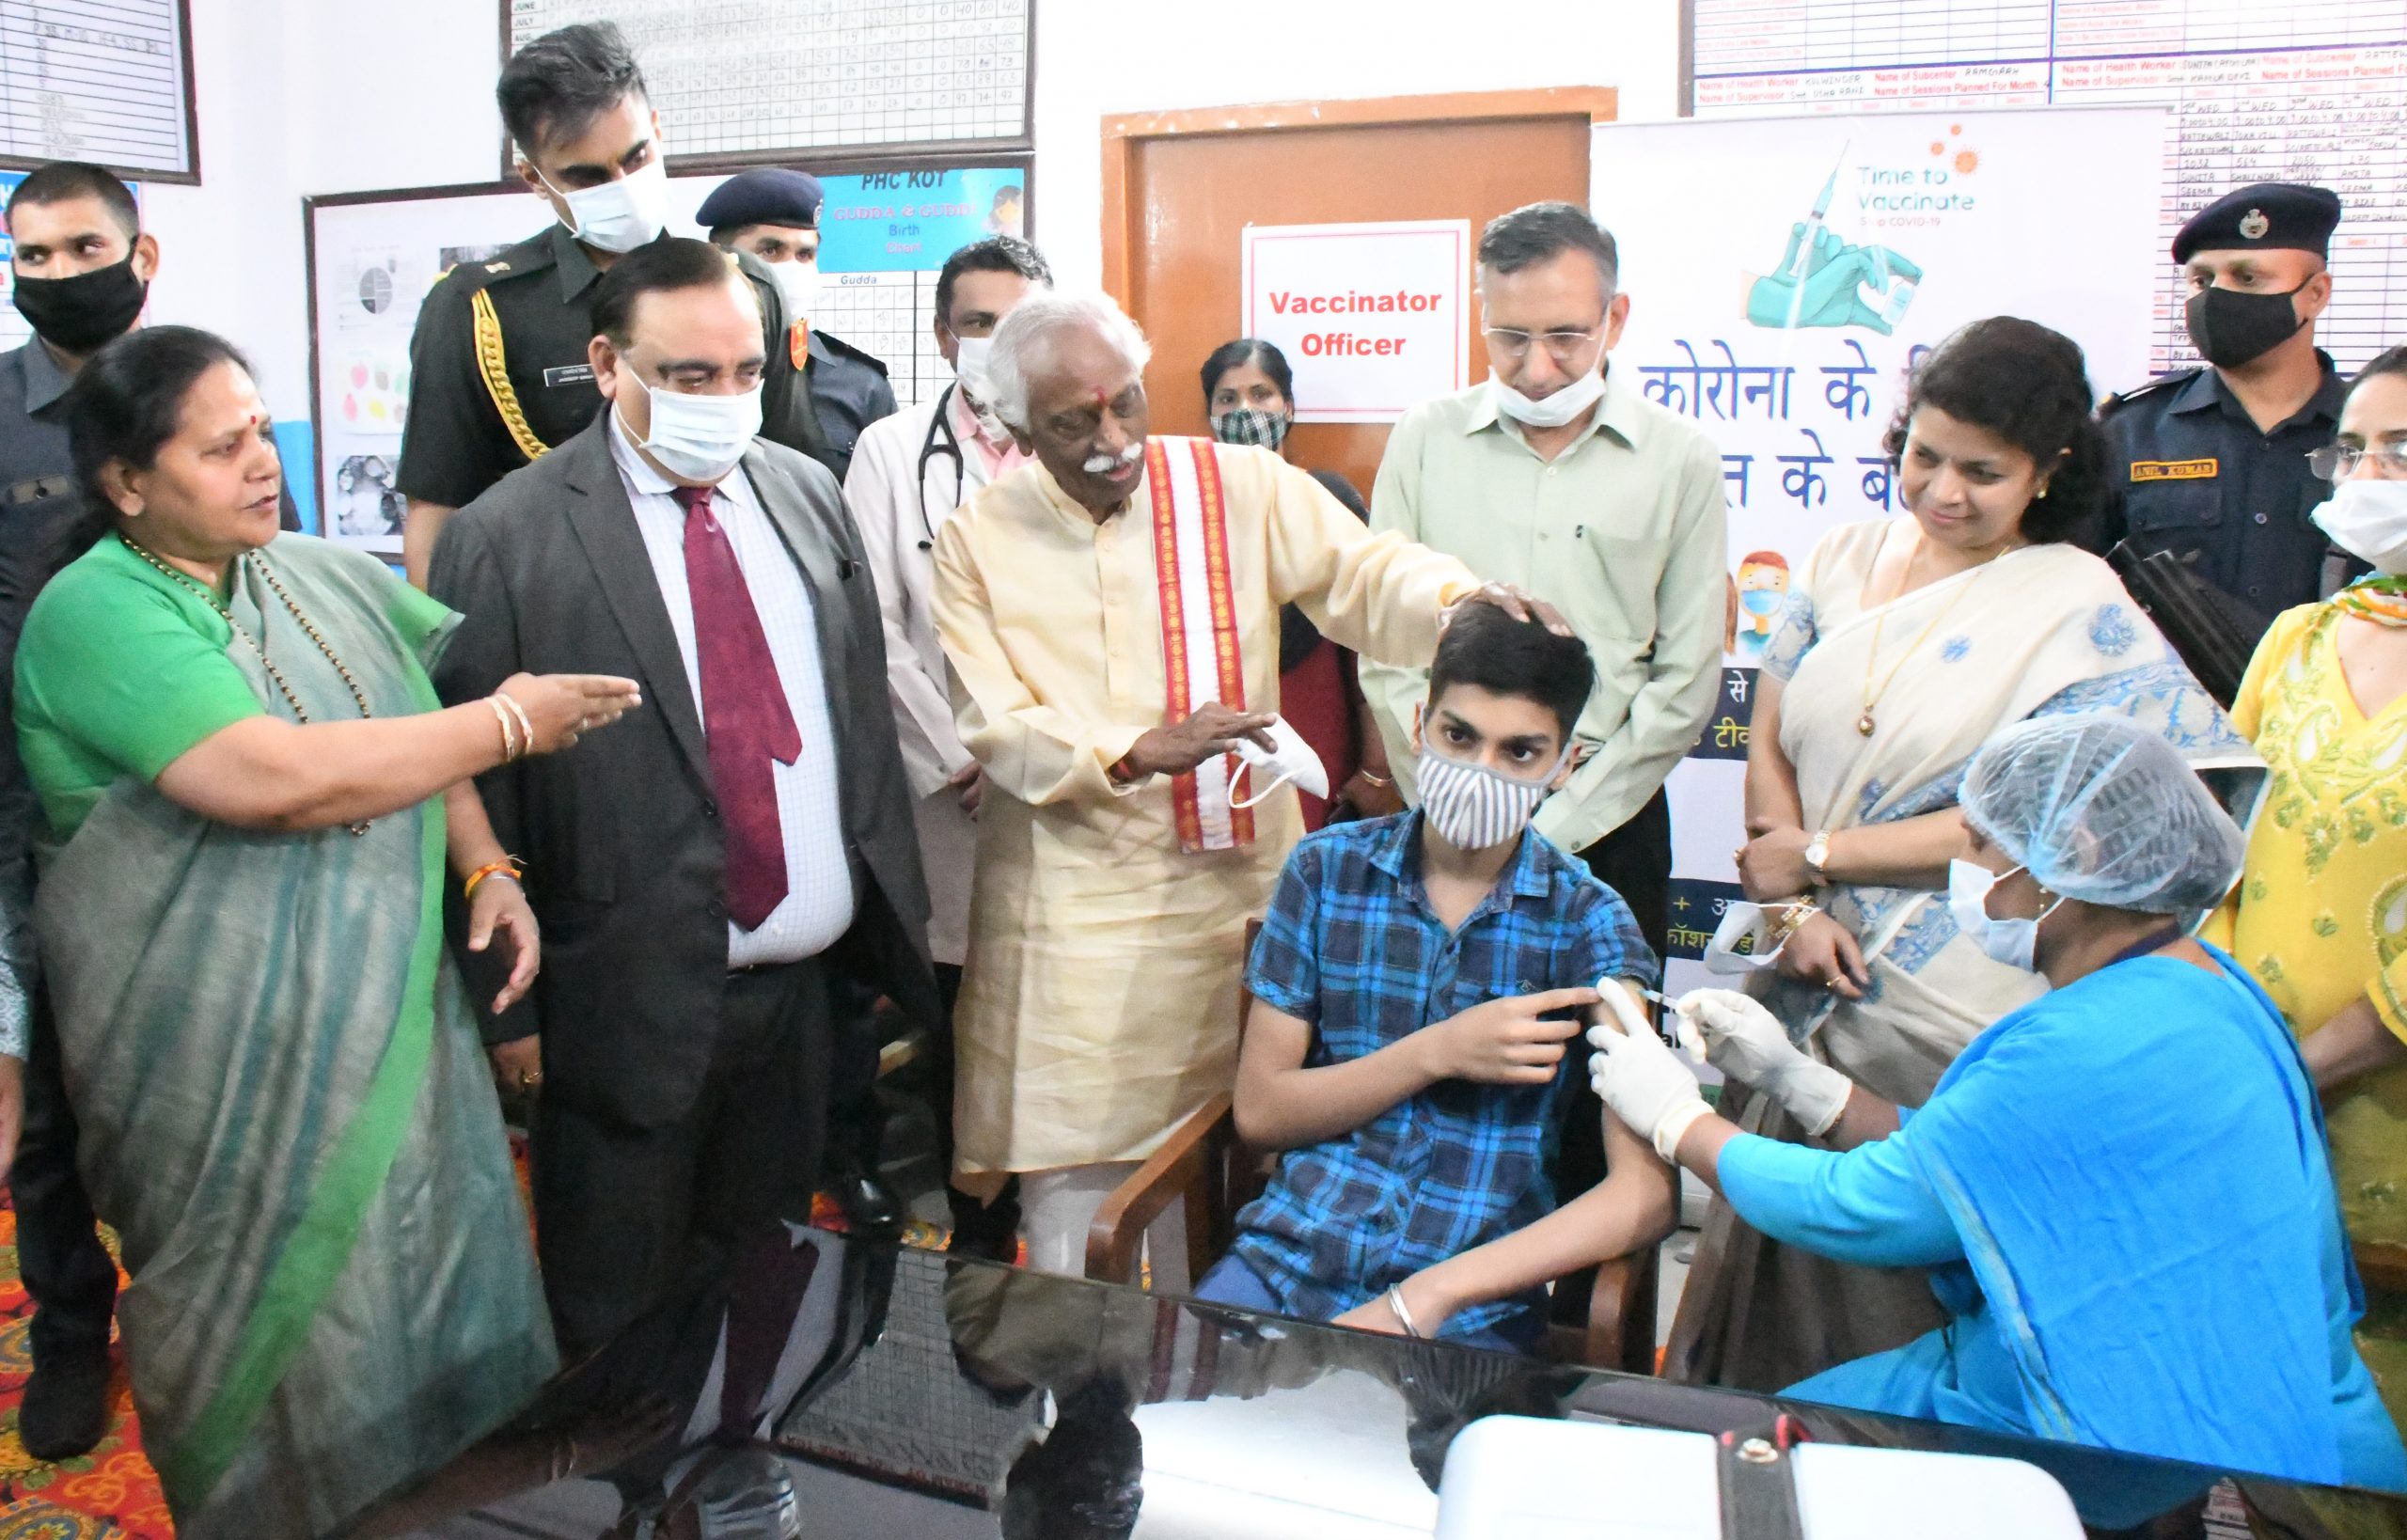 राज्यपाल श्री बंडारू दत्तात्रेय द्वारा 12 से 14 वर्ष की आयु के बच्चों के लिए कोर्बवैक्स टीकाकरण अभियान के शुरूआत की गई